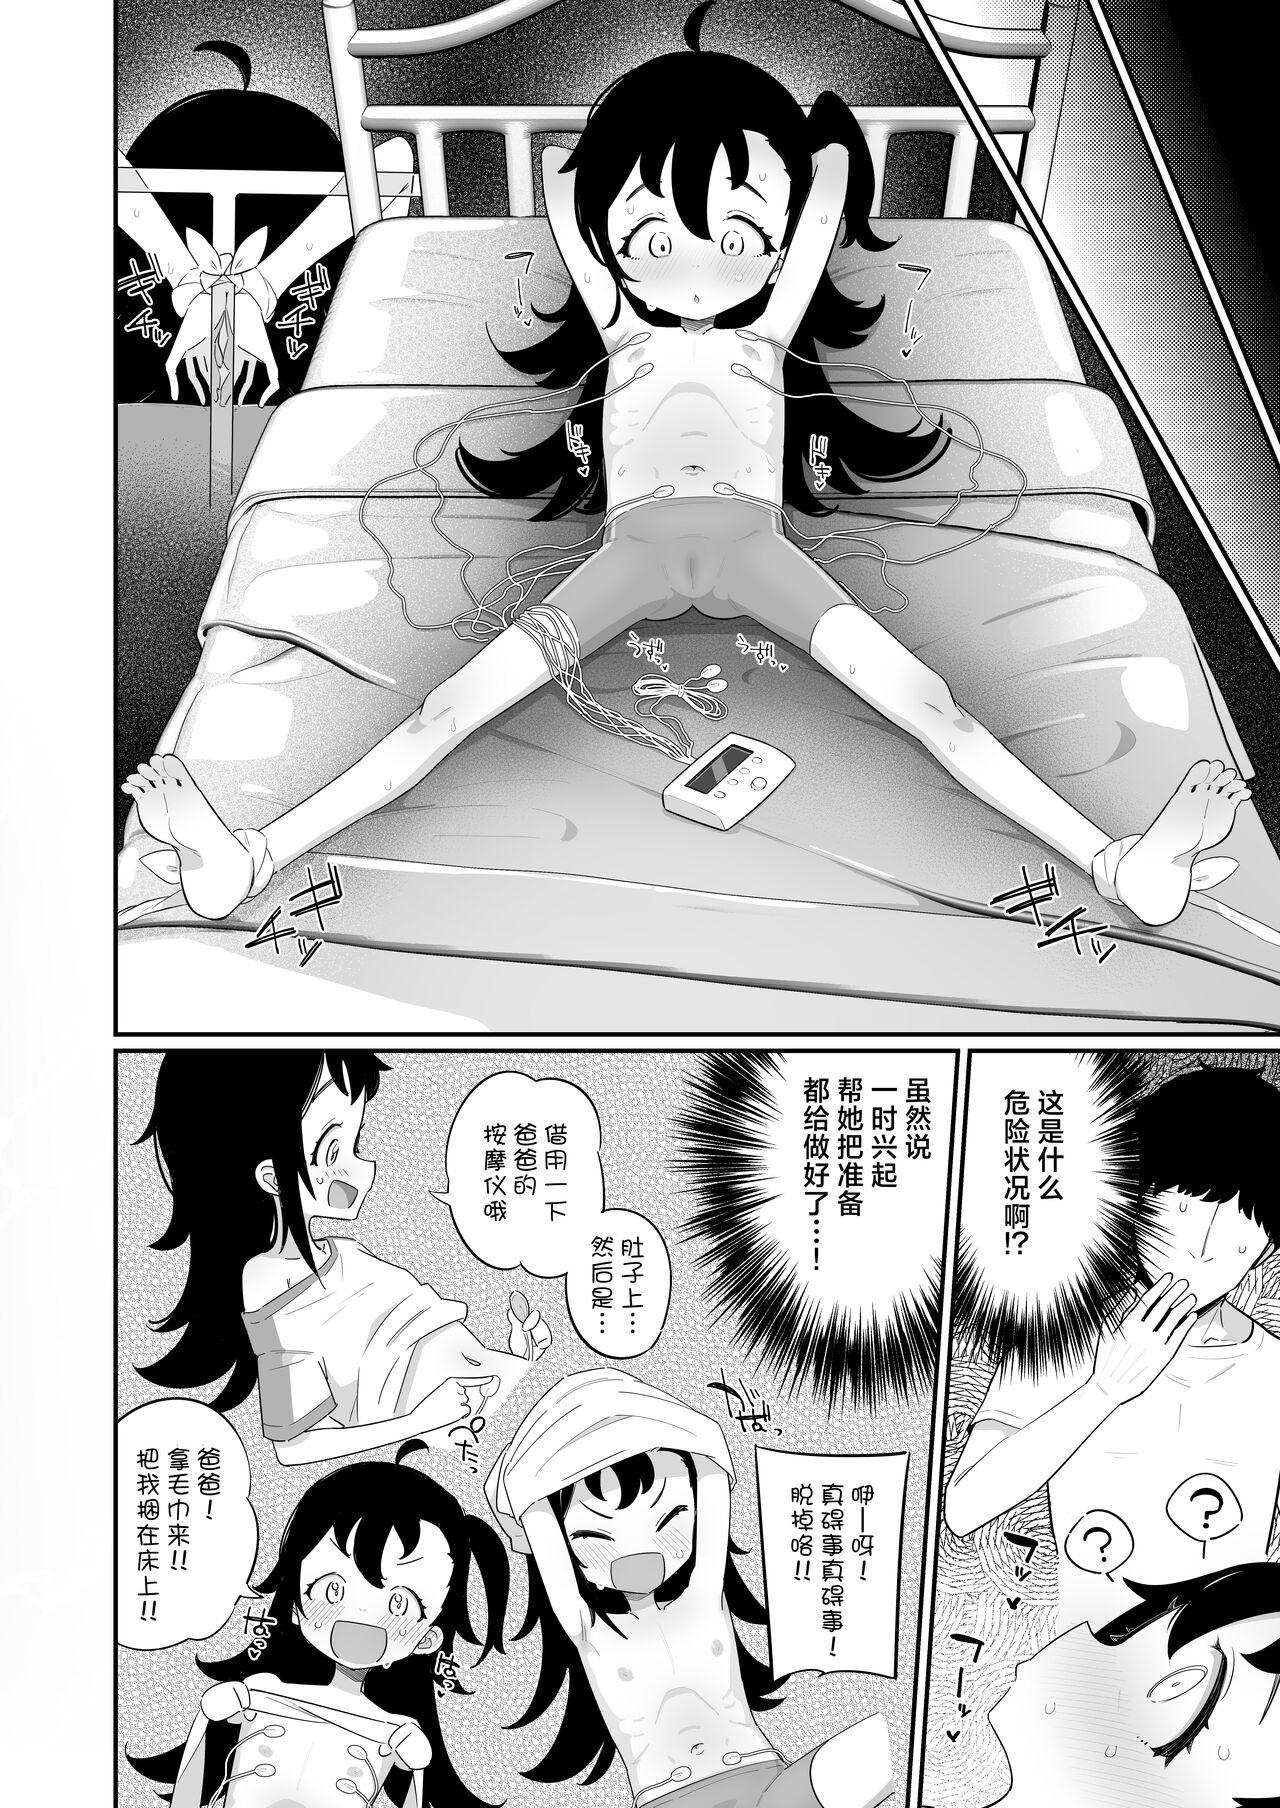 With Otou-san, Aka Kaiza ga Makesounano miruto Boku no Onaka ga Zokutte suruno, Doushite? - Original Bizarre - Page 4